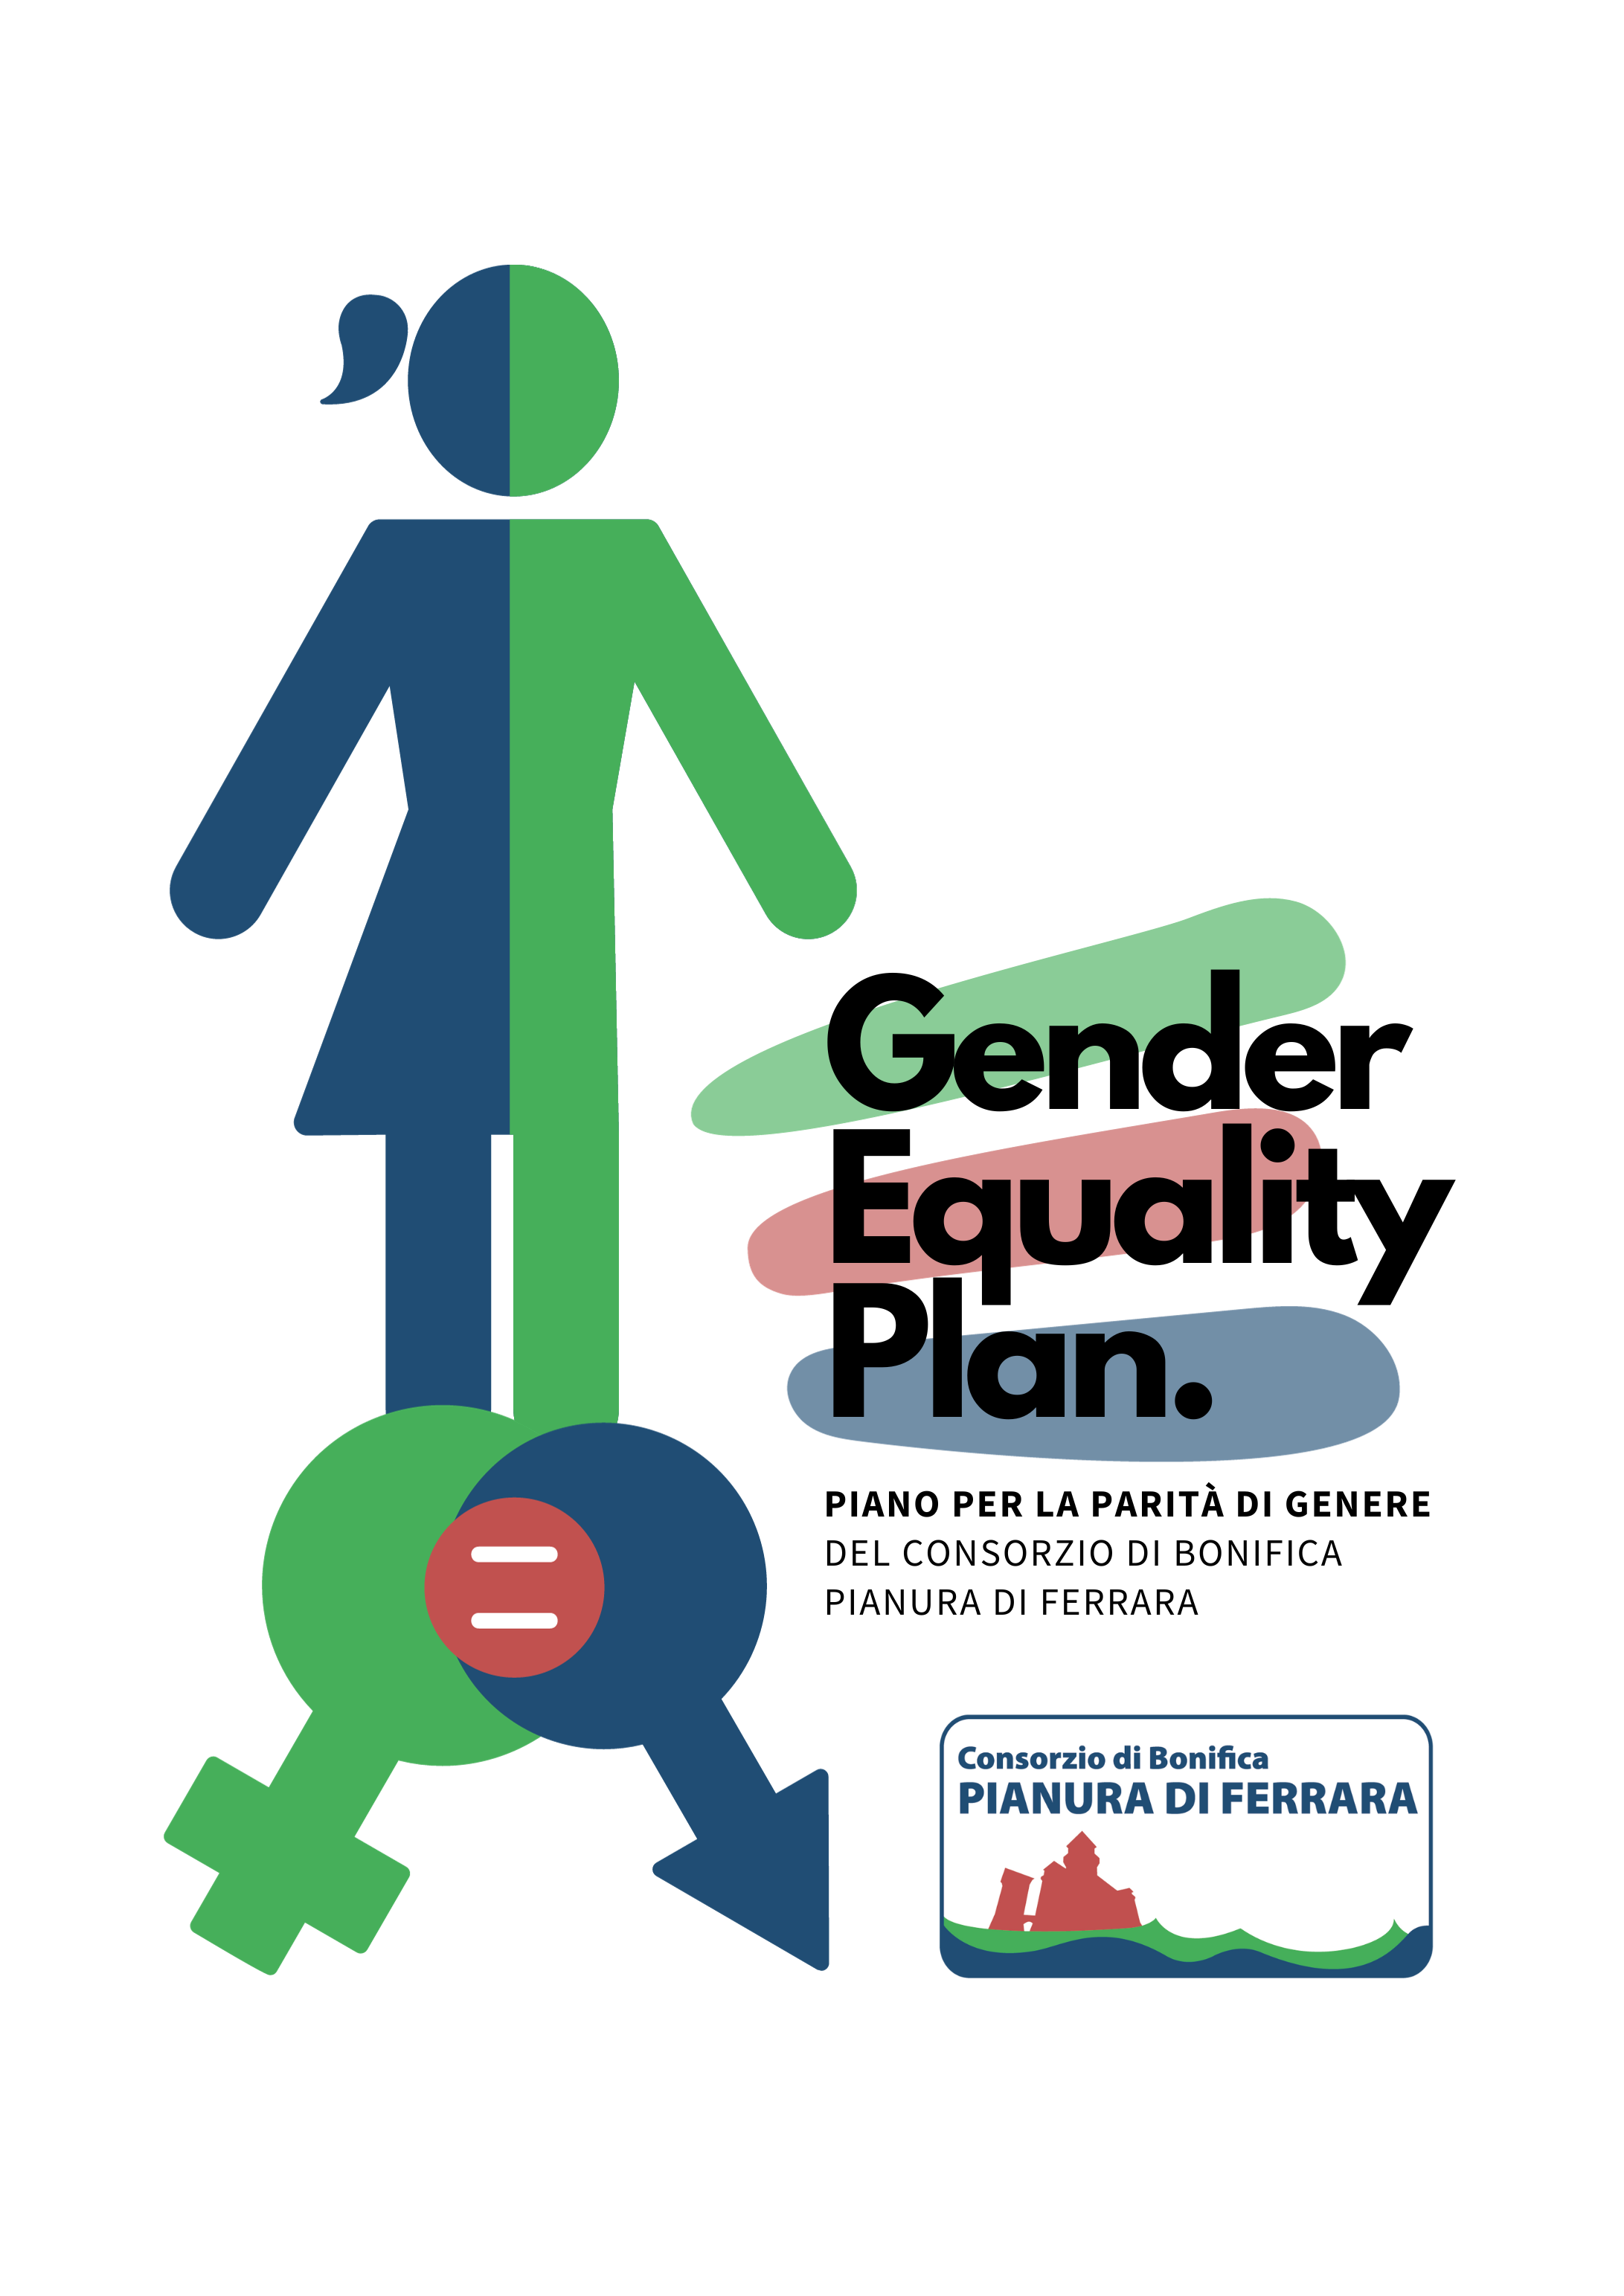 Il Consorzio ha approvato il Gender Equality Plan